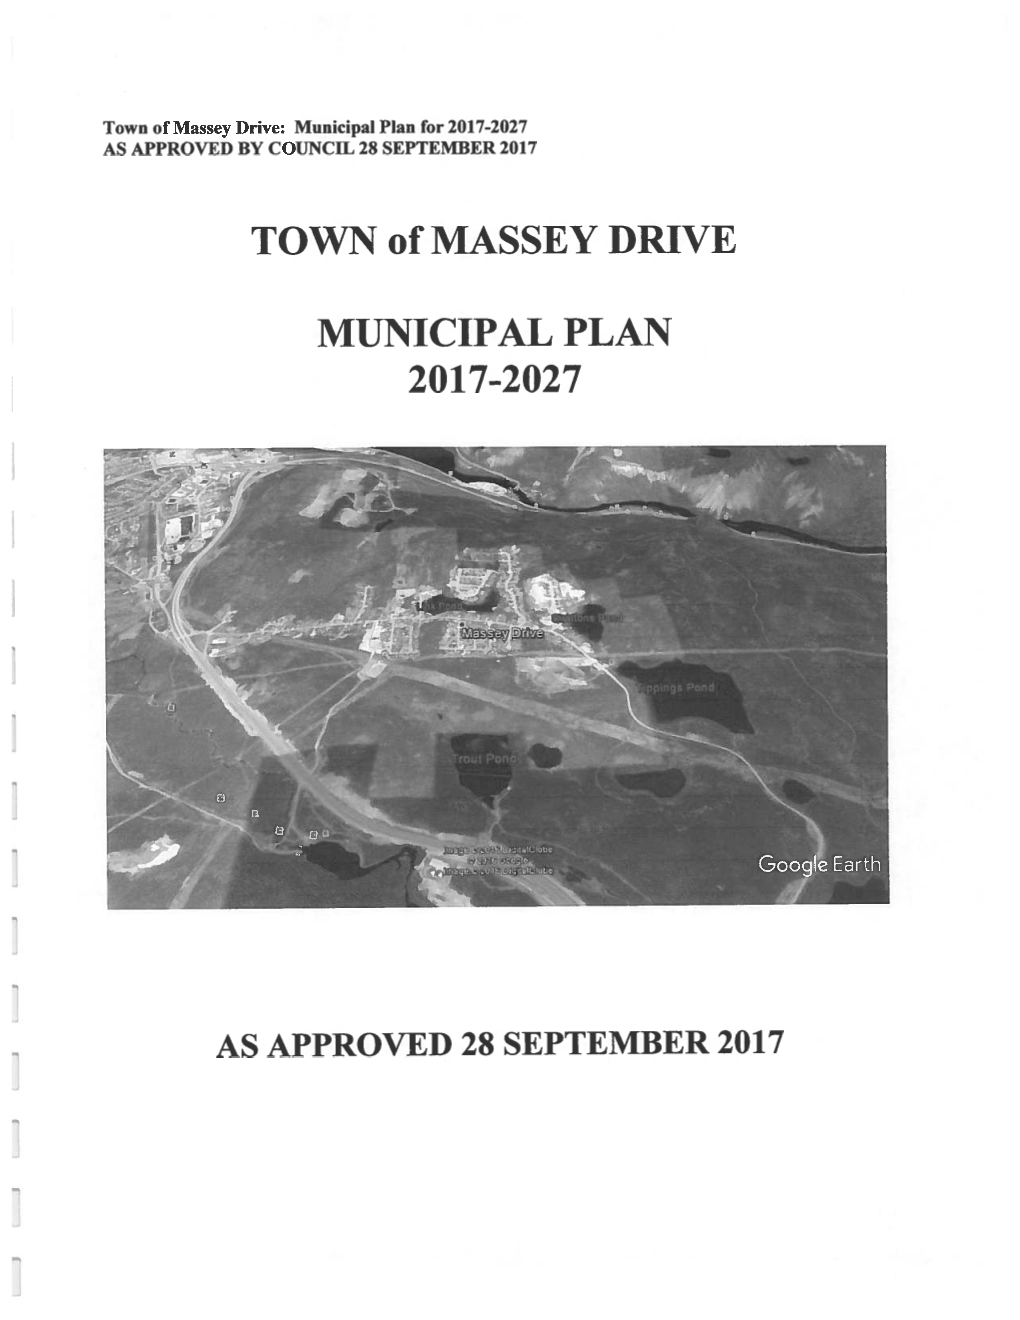 TOWN of MASSEY DRIVE MUNICIPAL PLAN 2017-2027